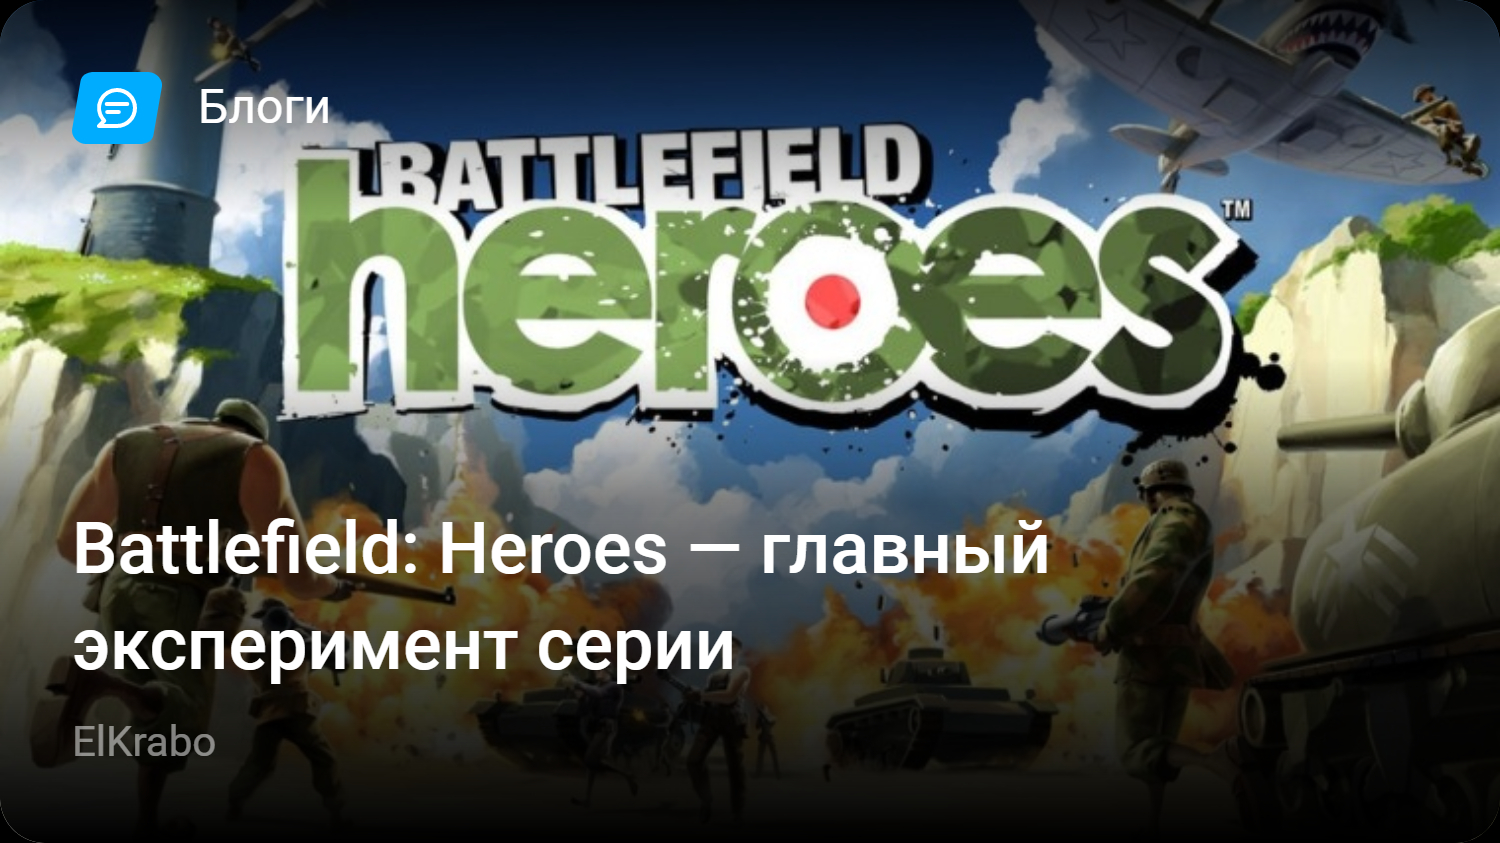 Battlefield: Heroes — главный эксперимент серии